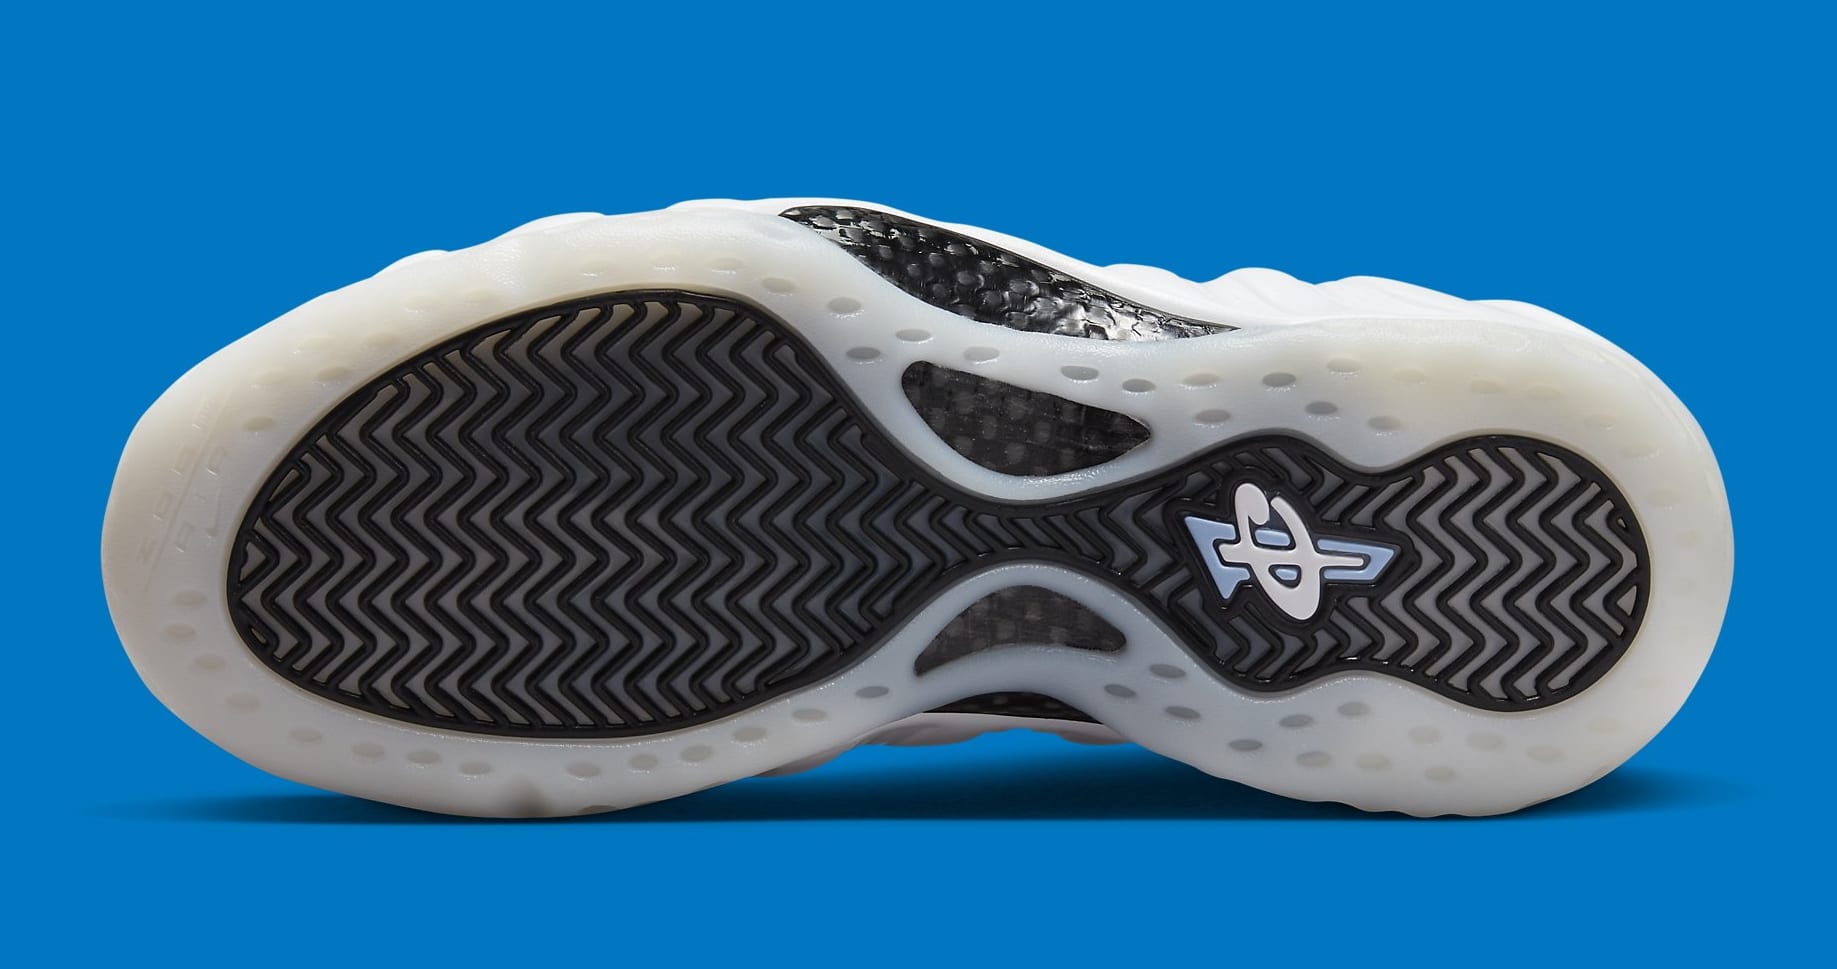 Nike Air Foamposite One White Penny Hardaway PE Release Date DV0815-100 Sole